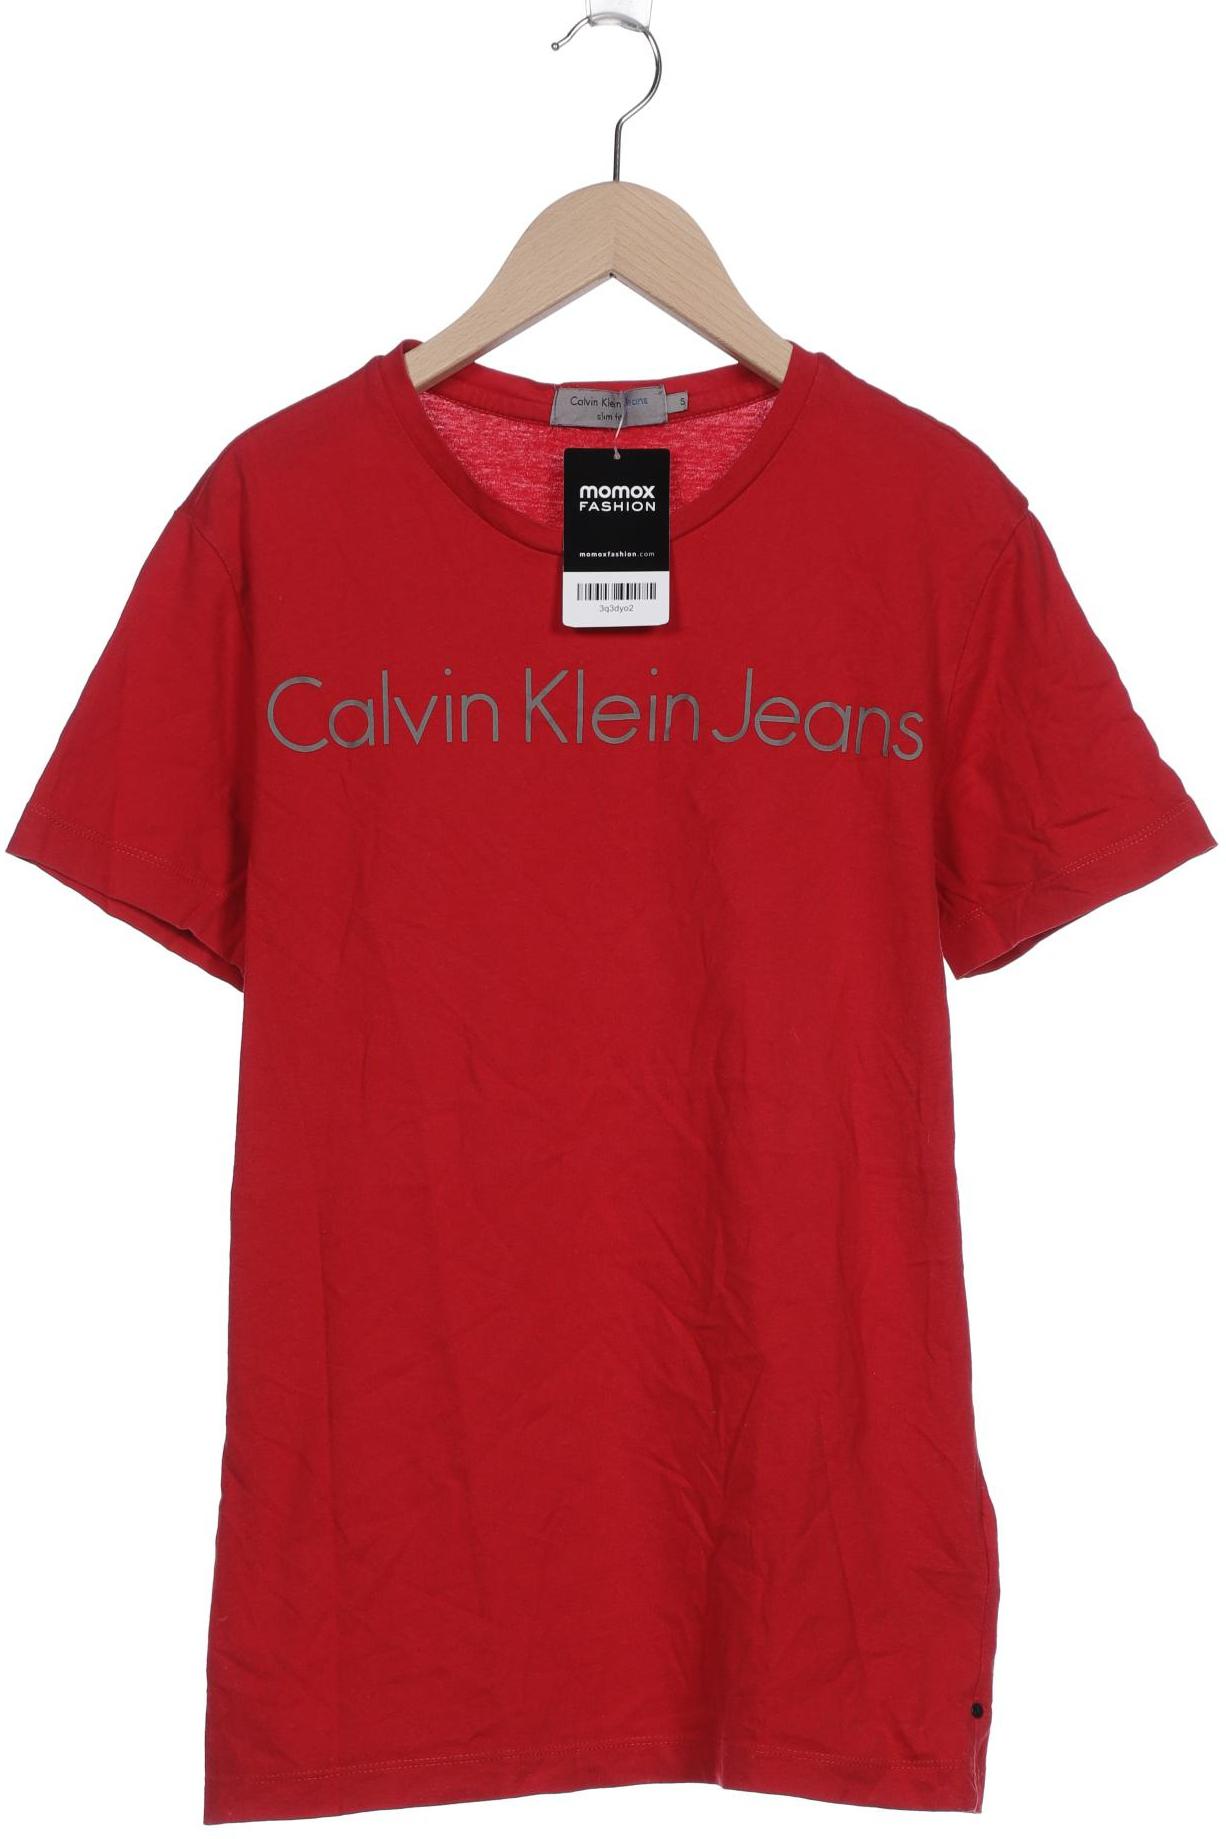 Calvin Klein Jeans Herren T-Shirt, rot von Calvin Klein Jeans